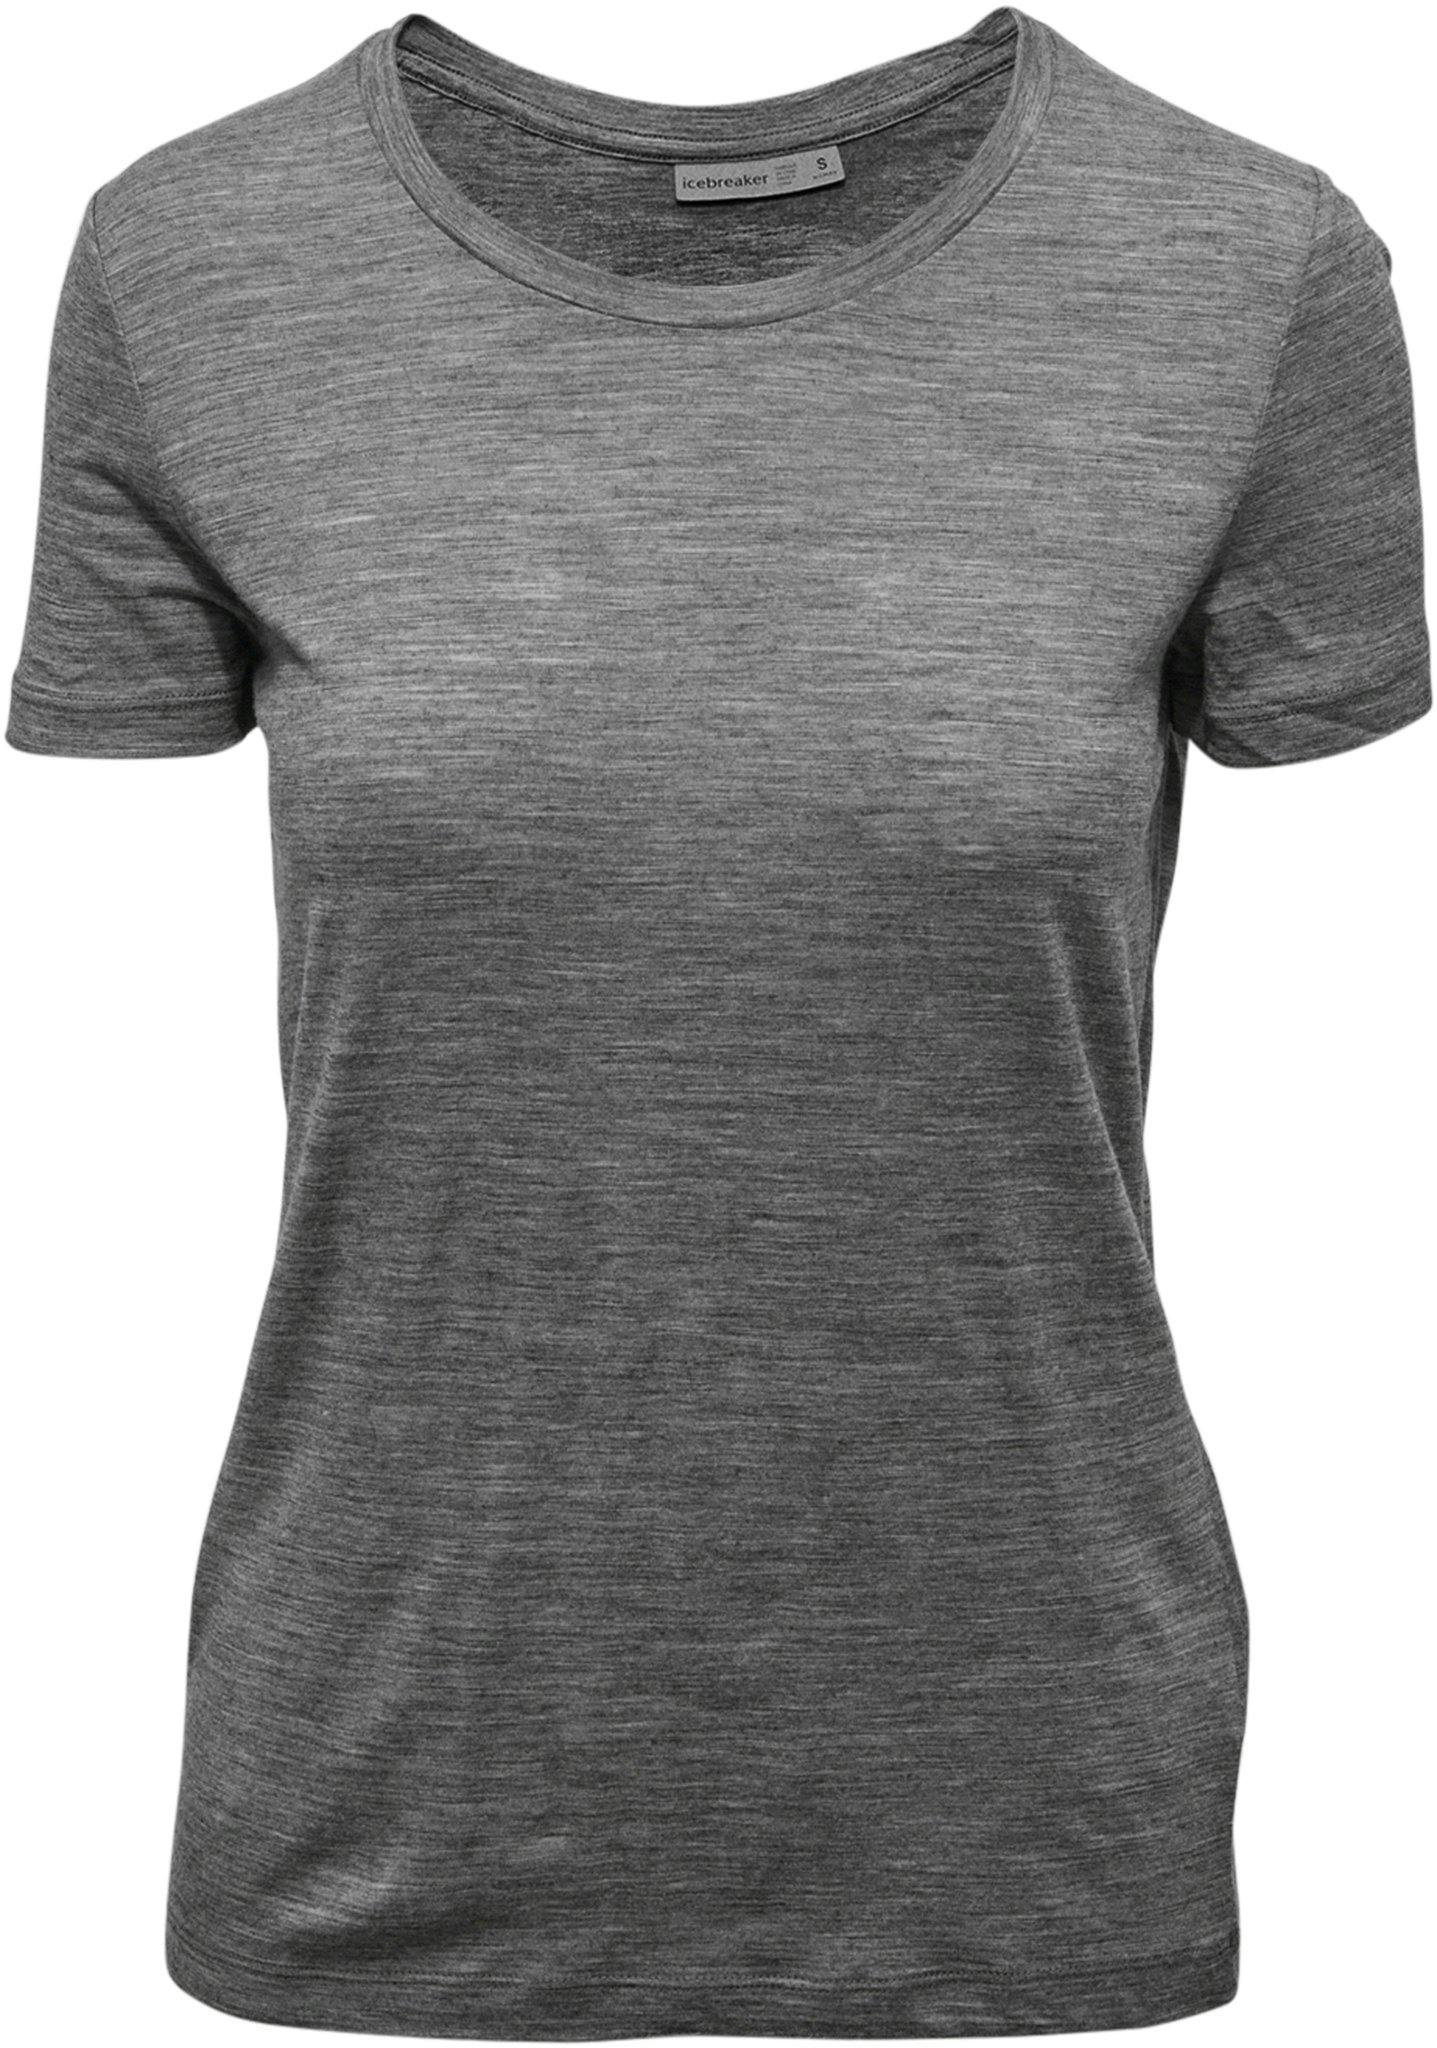 Image de produit pour T-shirt à manches courtes Tech Lite II - Femme